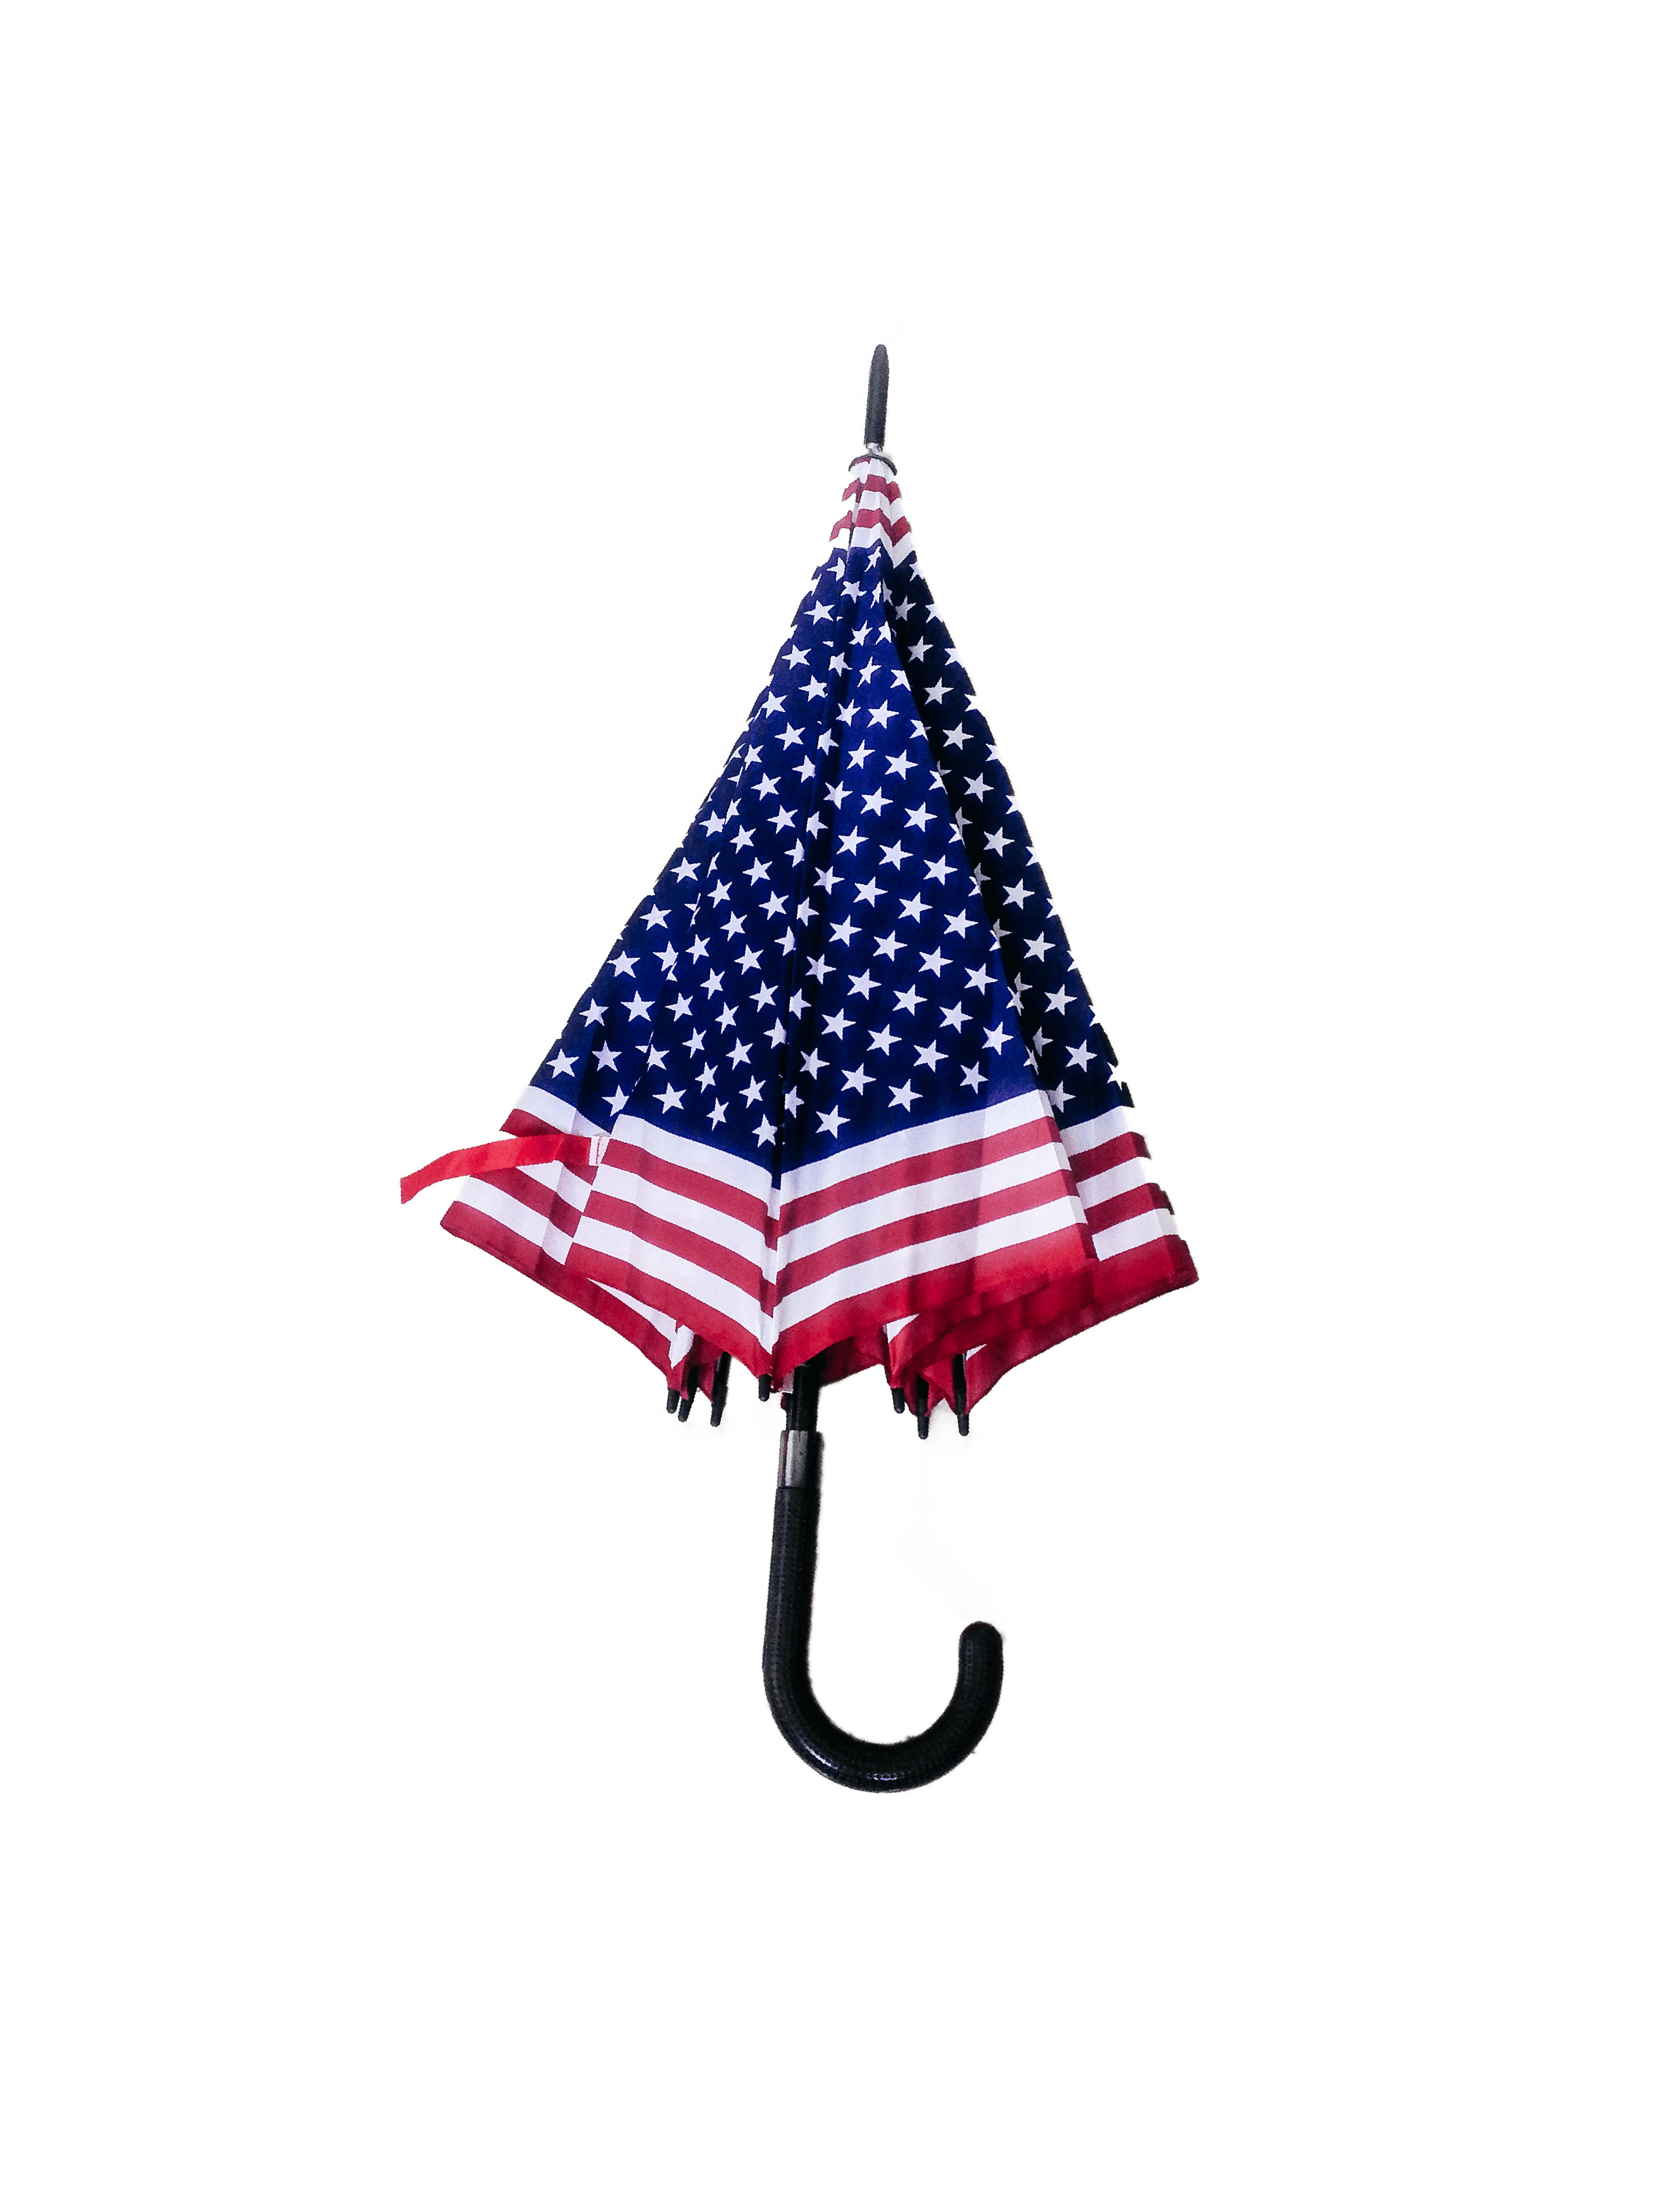 LOT DE 12 - Parapluie long drapeau USA 3,90€/unité | Grossiste-pro